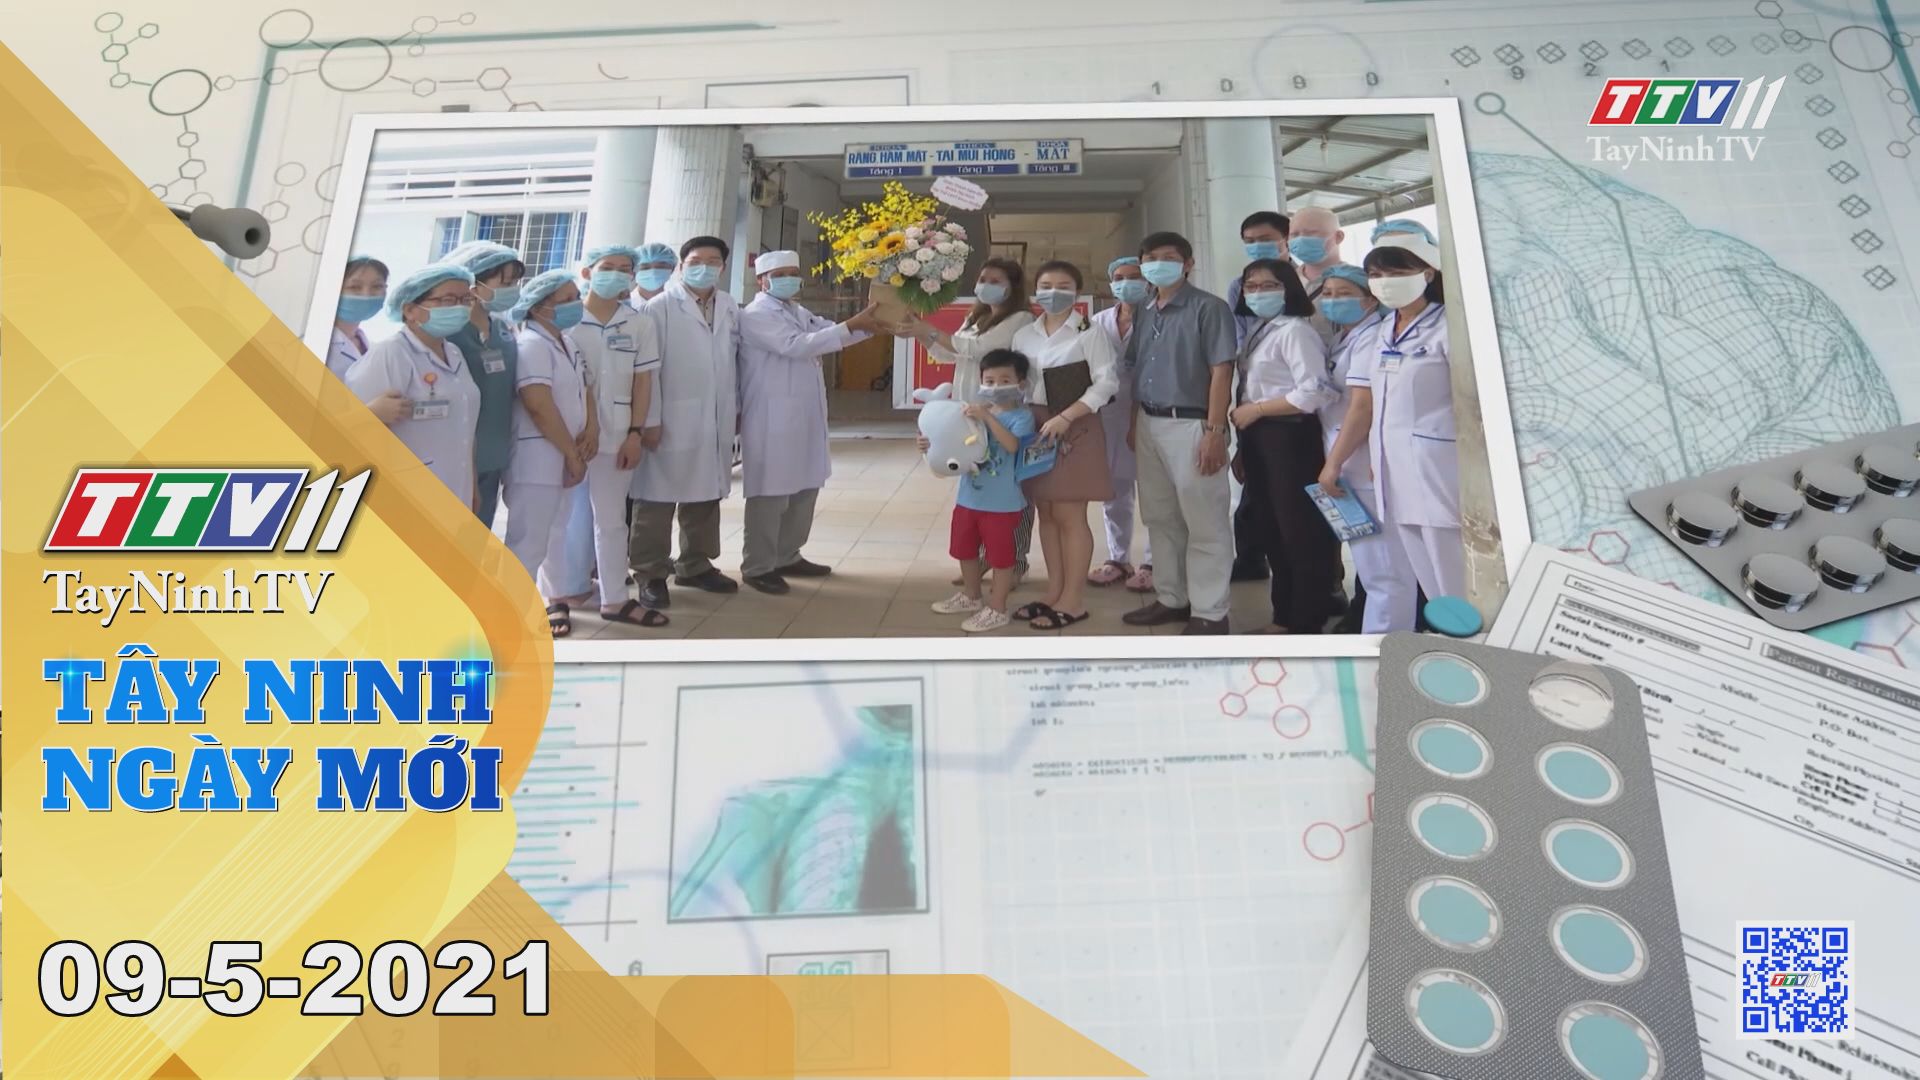 Tây Ninh Ngày Mới 09-5-2021 | Tin tức hôm nay | TayNinhTV